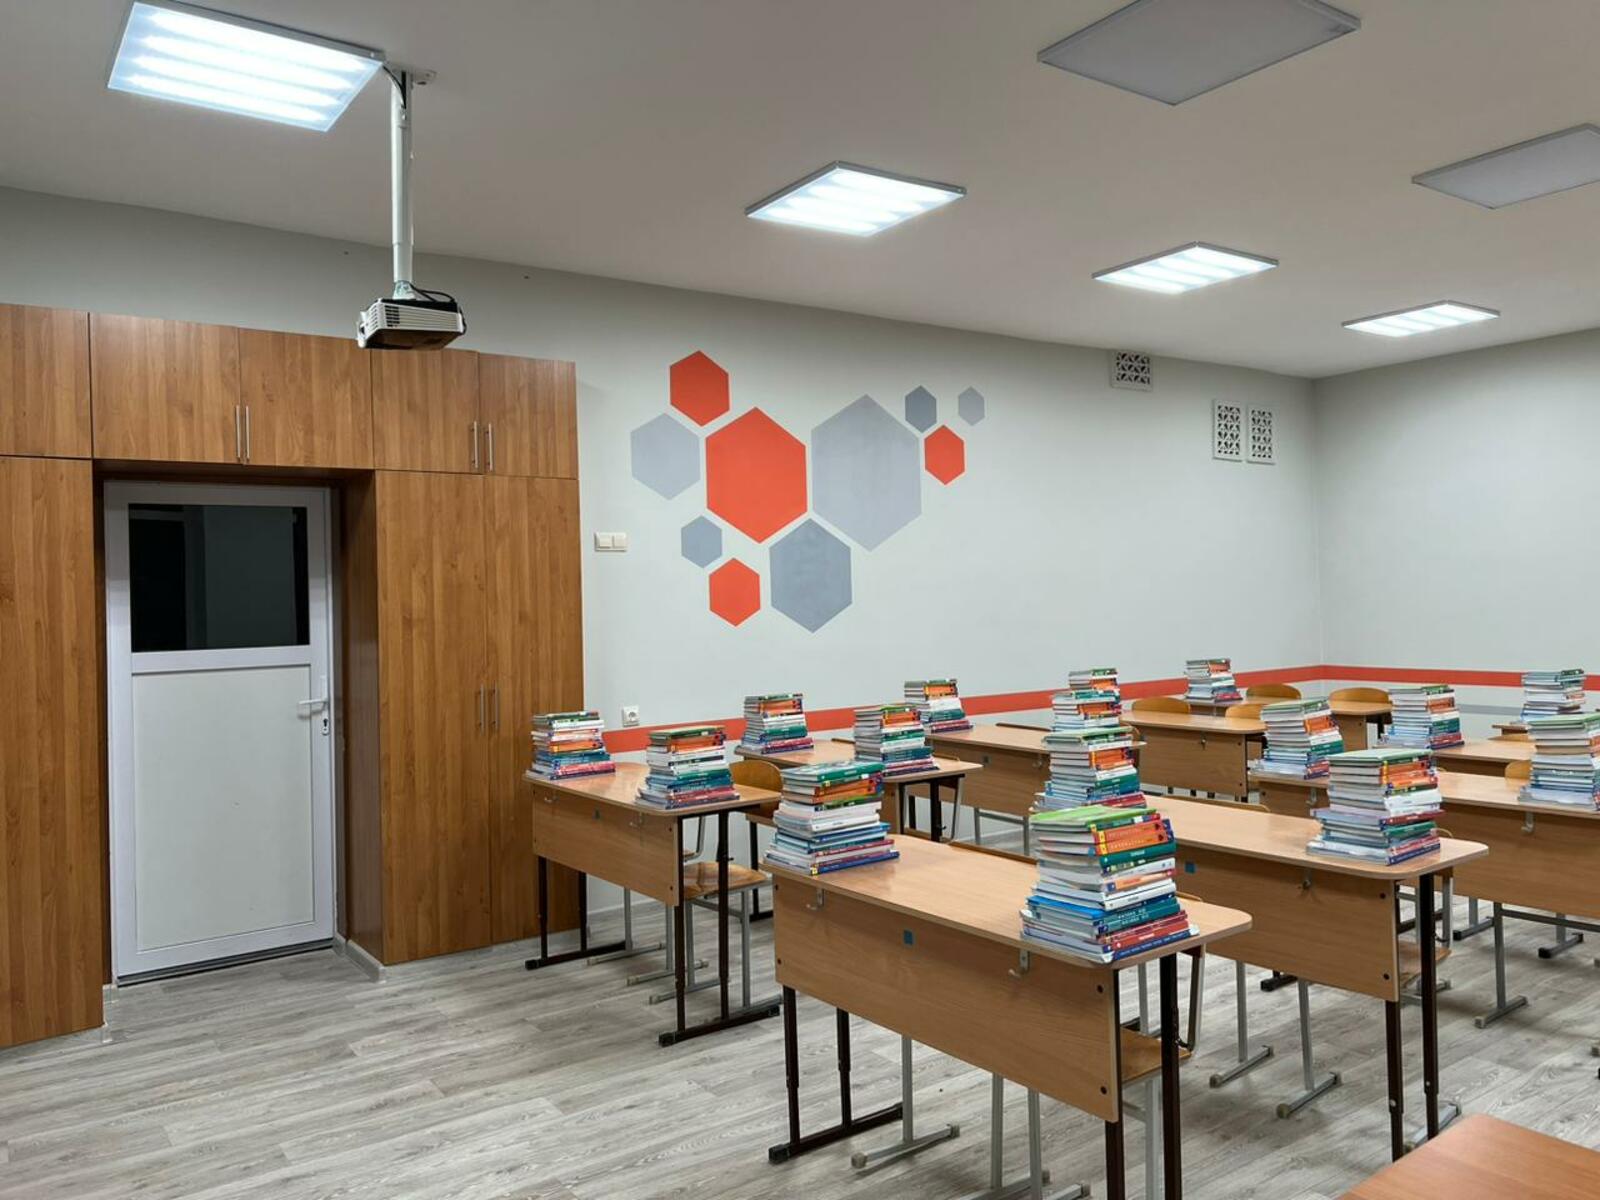 Лаборатория Межвузовского кампуса брендирует школьные классы